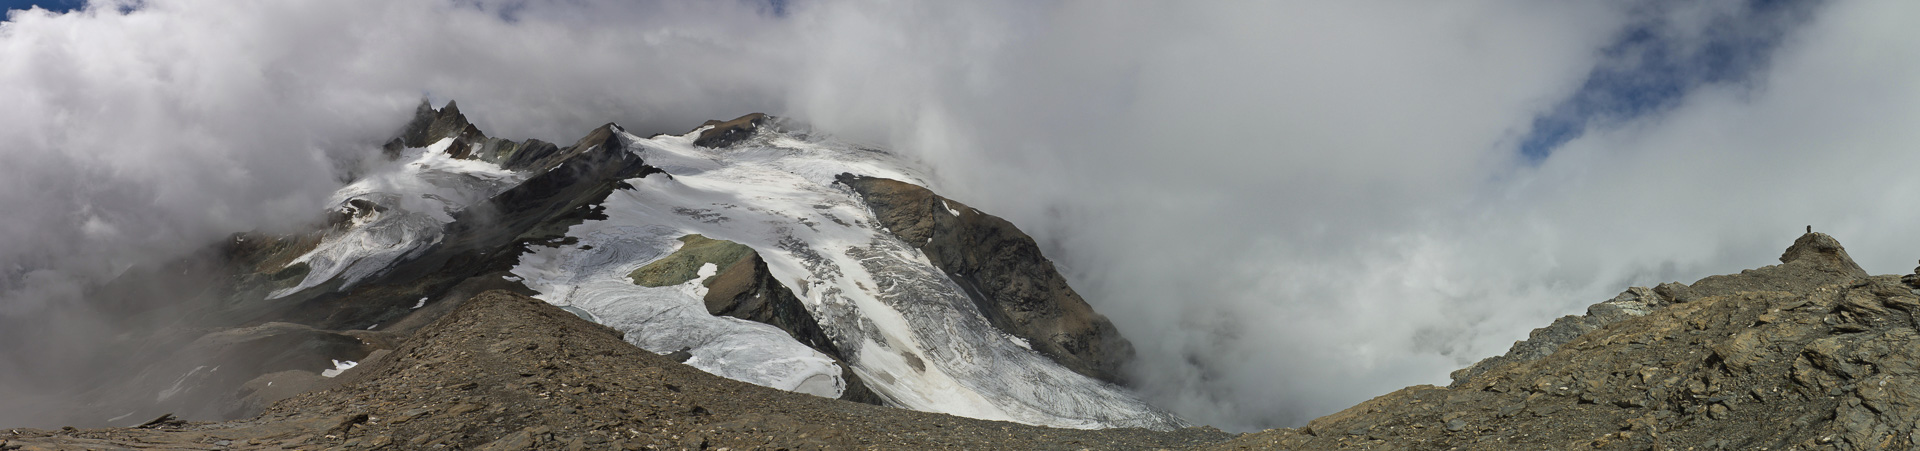 Kalt und in Wolken unser erster Gipfel - die Aussicht reichte nur bis zur Pointe de Vouasson.